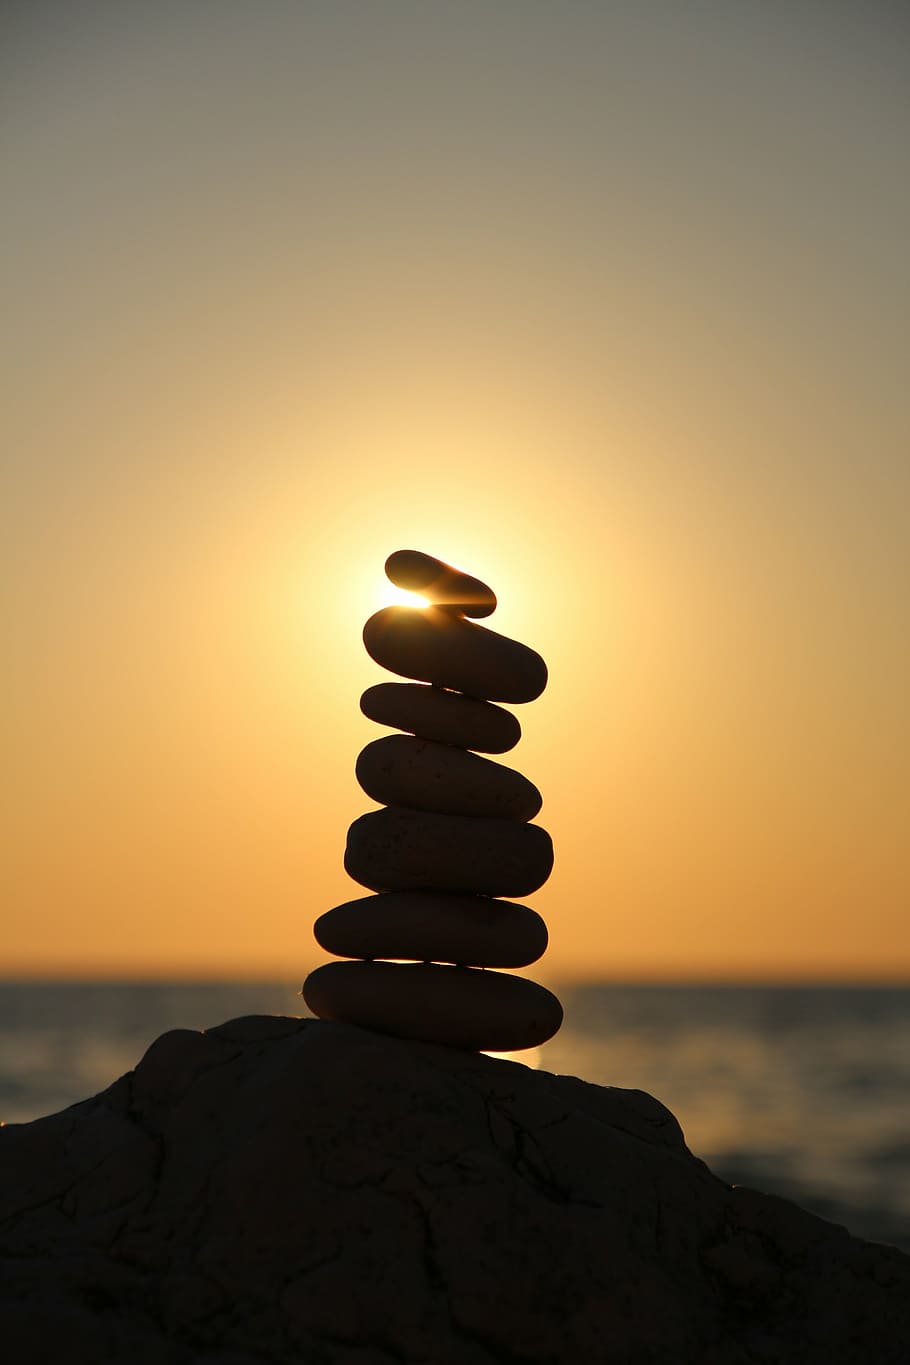 fotografia de silhueta, balanceamento de pedra, equilíbrio, pedras, torre de pedra, torre, em camadas, praia, relaxamento, monte de pedras